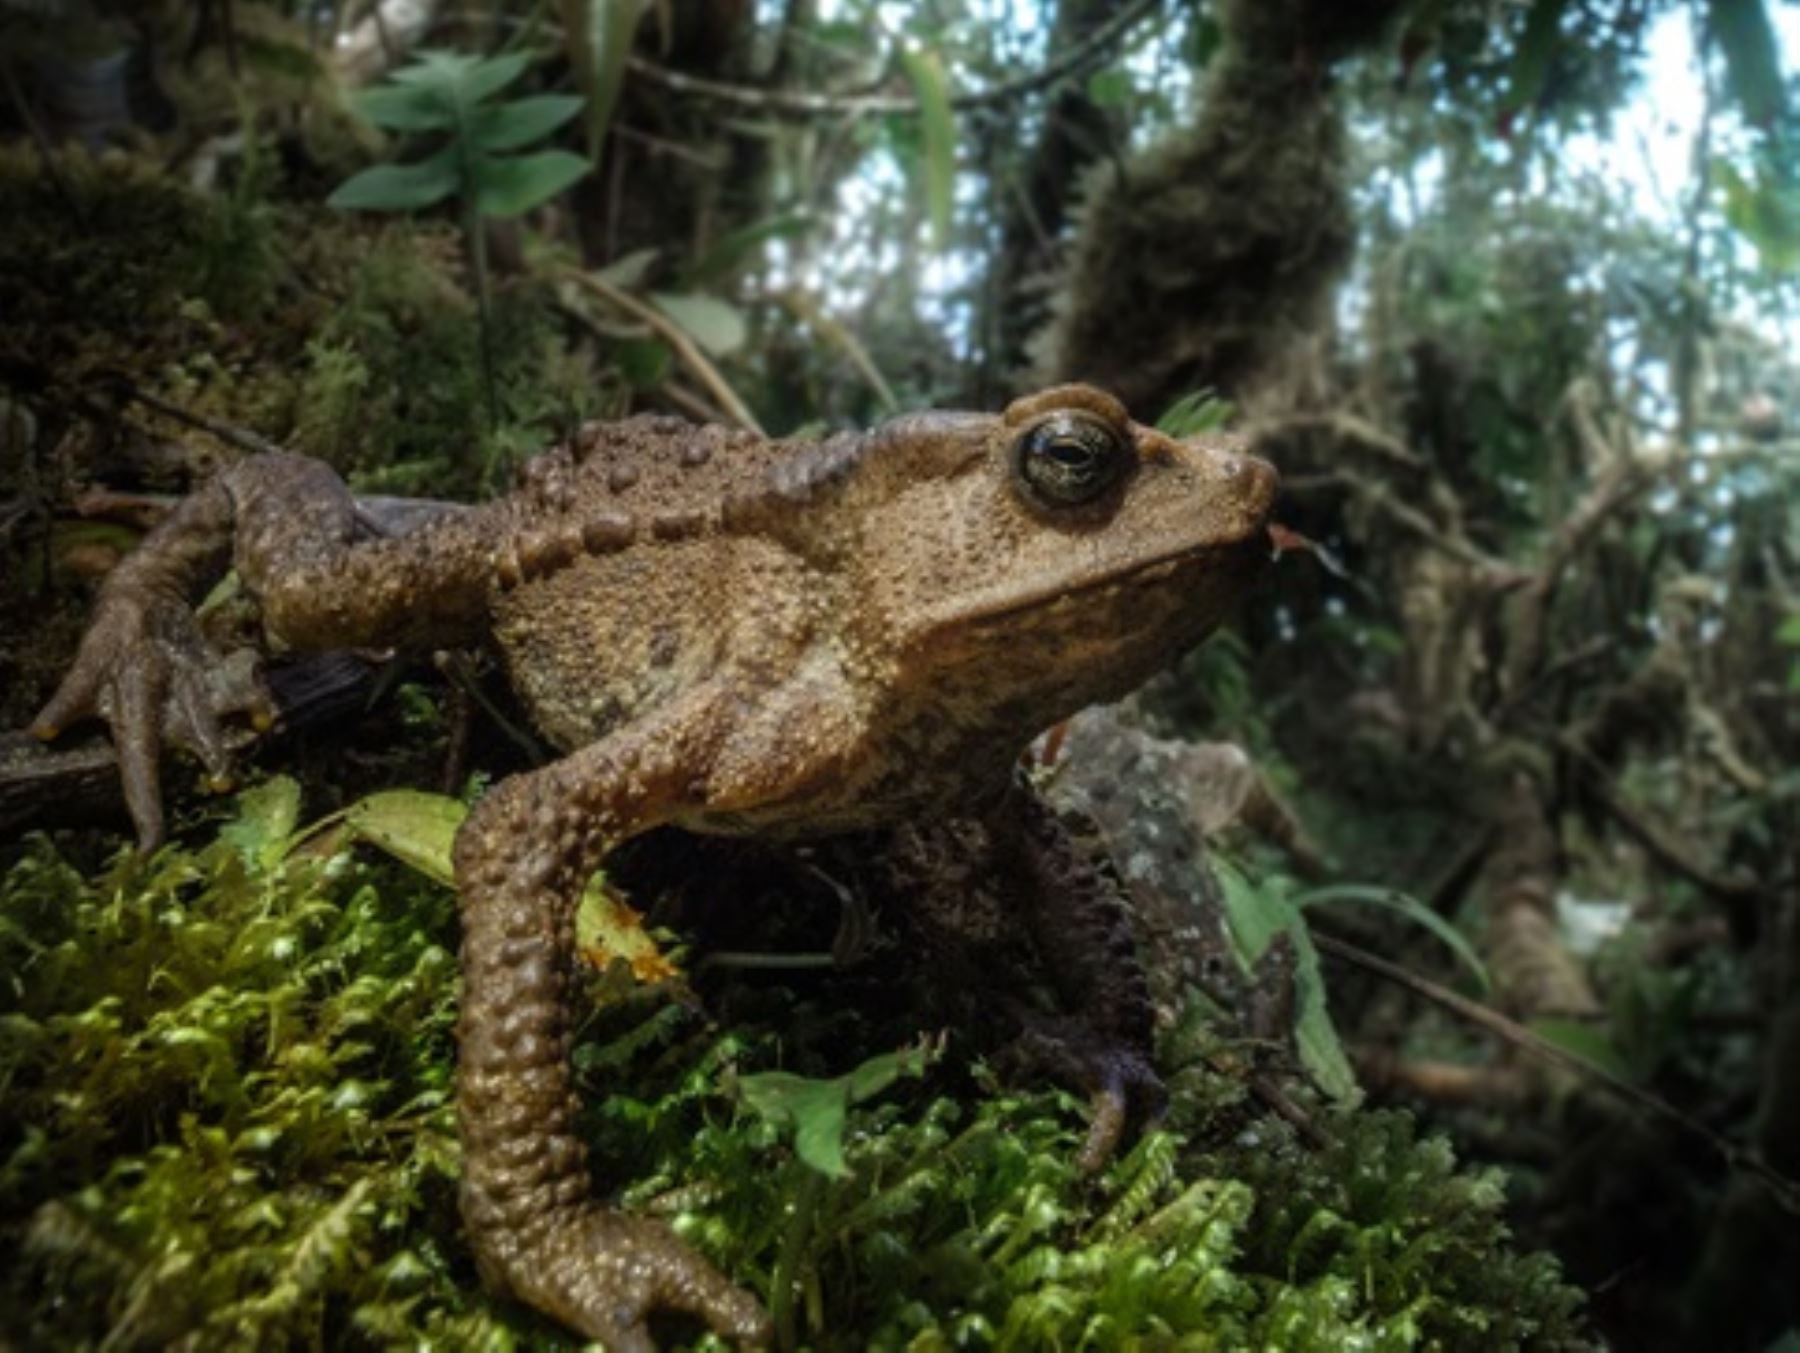 Investigadores registran 26 nuevas especies de anfibios y reptiles en el Santuario Nacional Cordillera de Colán, ubicado en Amazonas. Foto: Cortesía Pablo Venegas